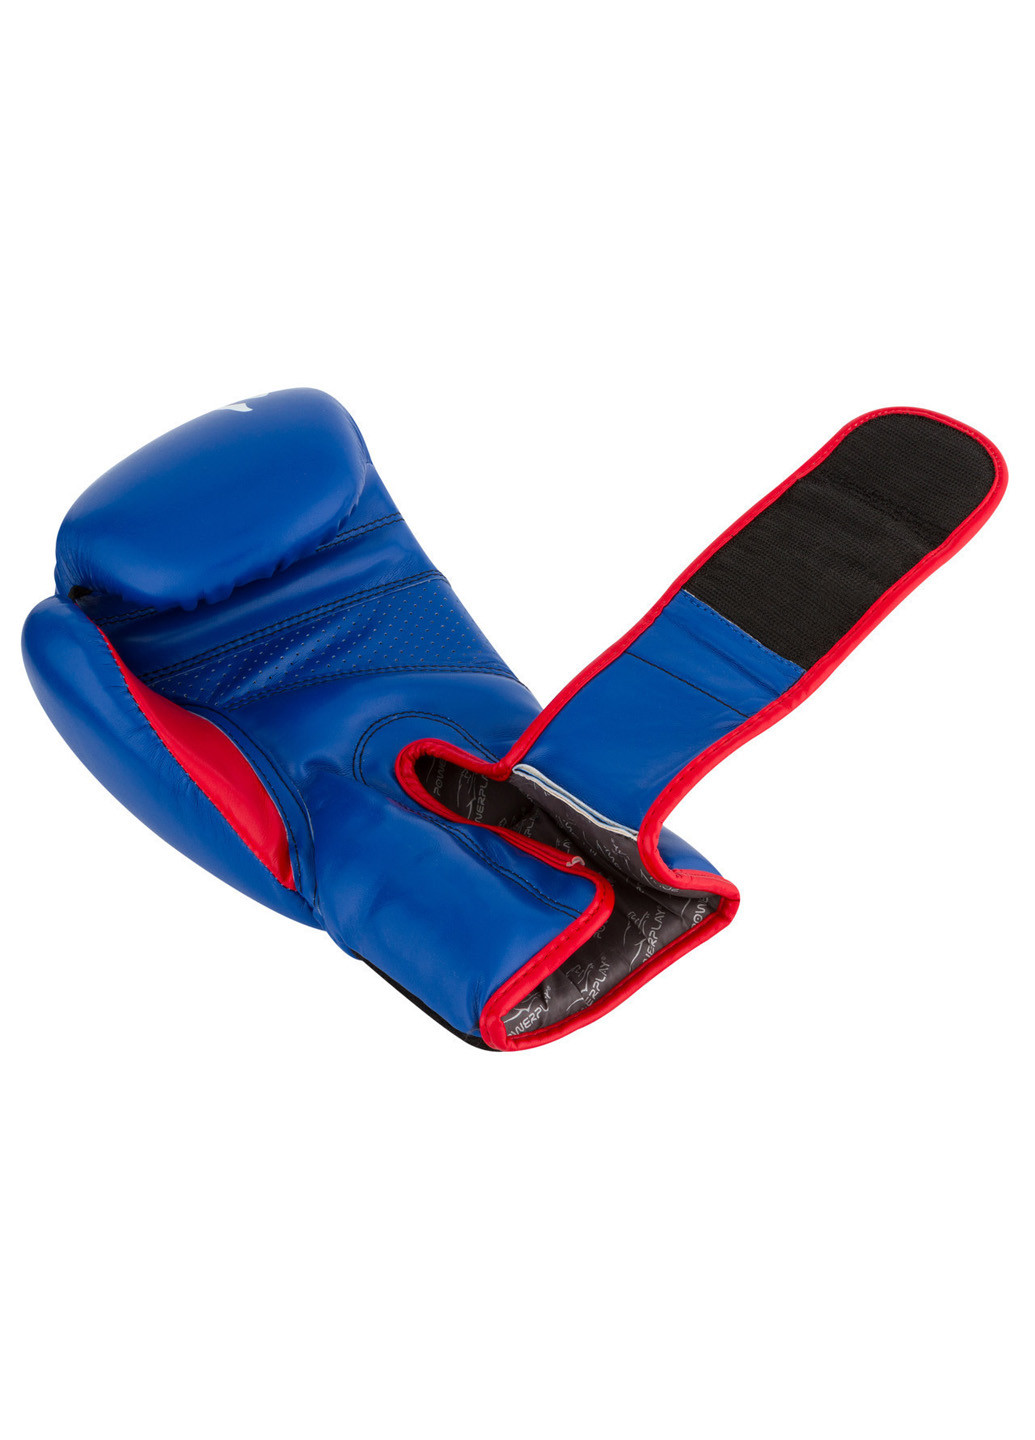 Боксерские перчатки 16 унций PowerPlay (196422465)